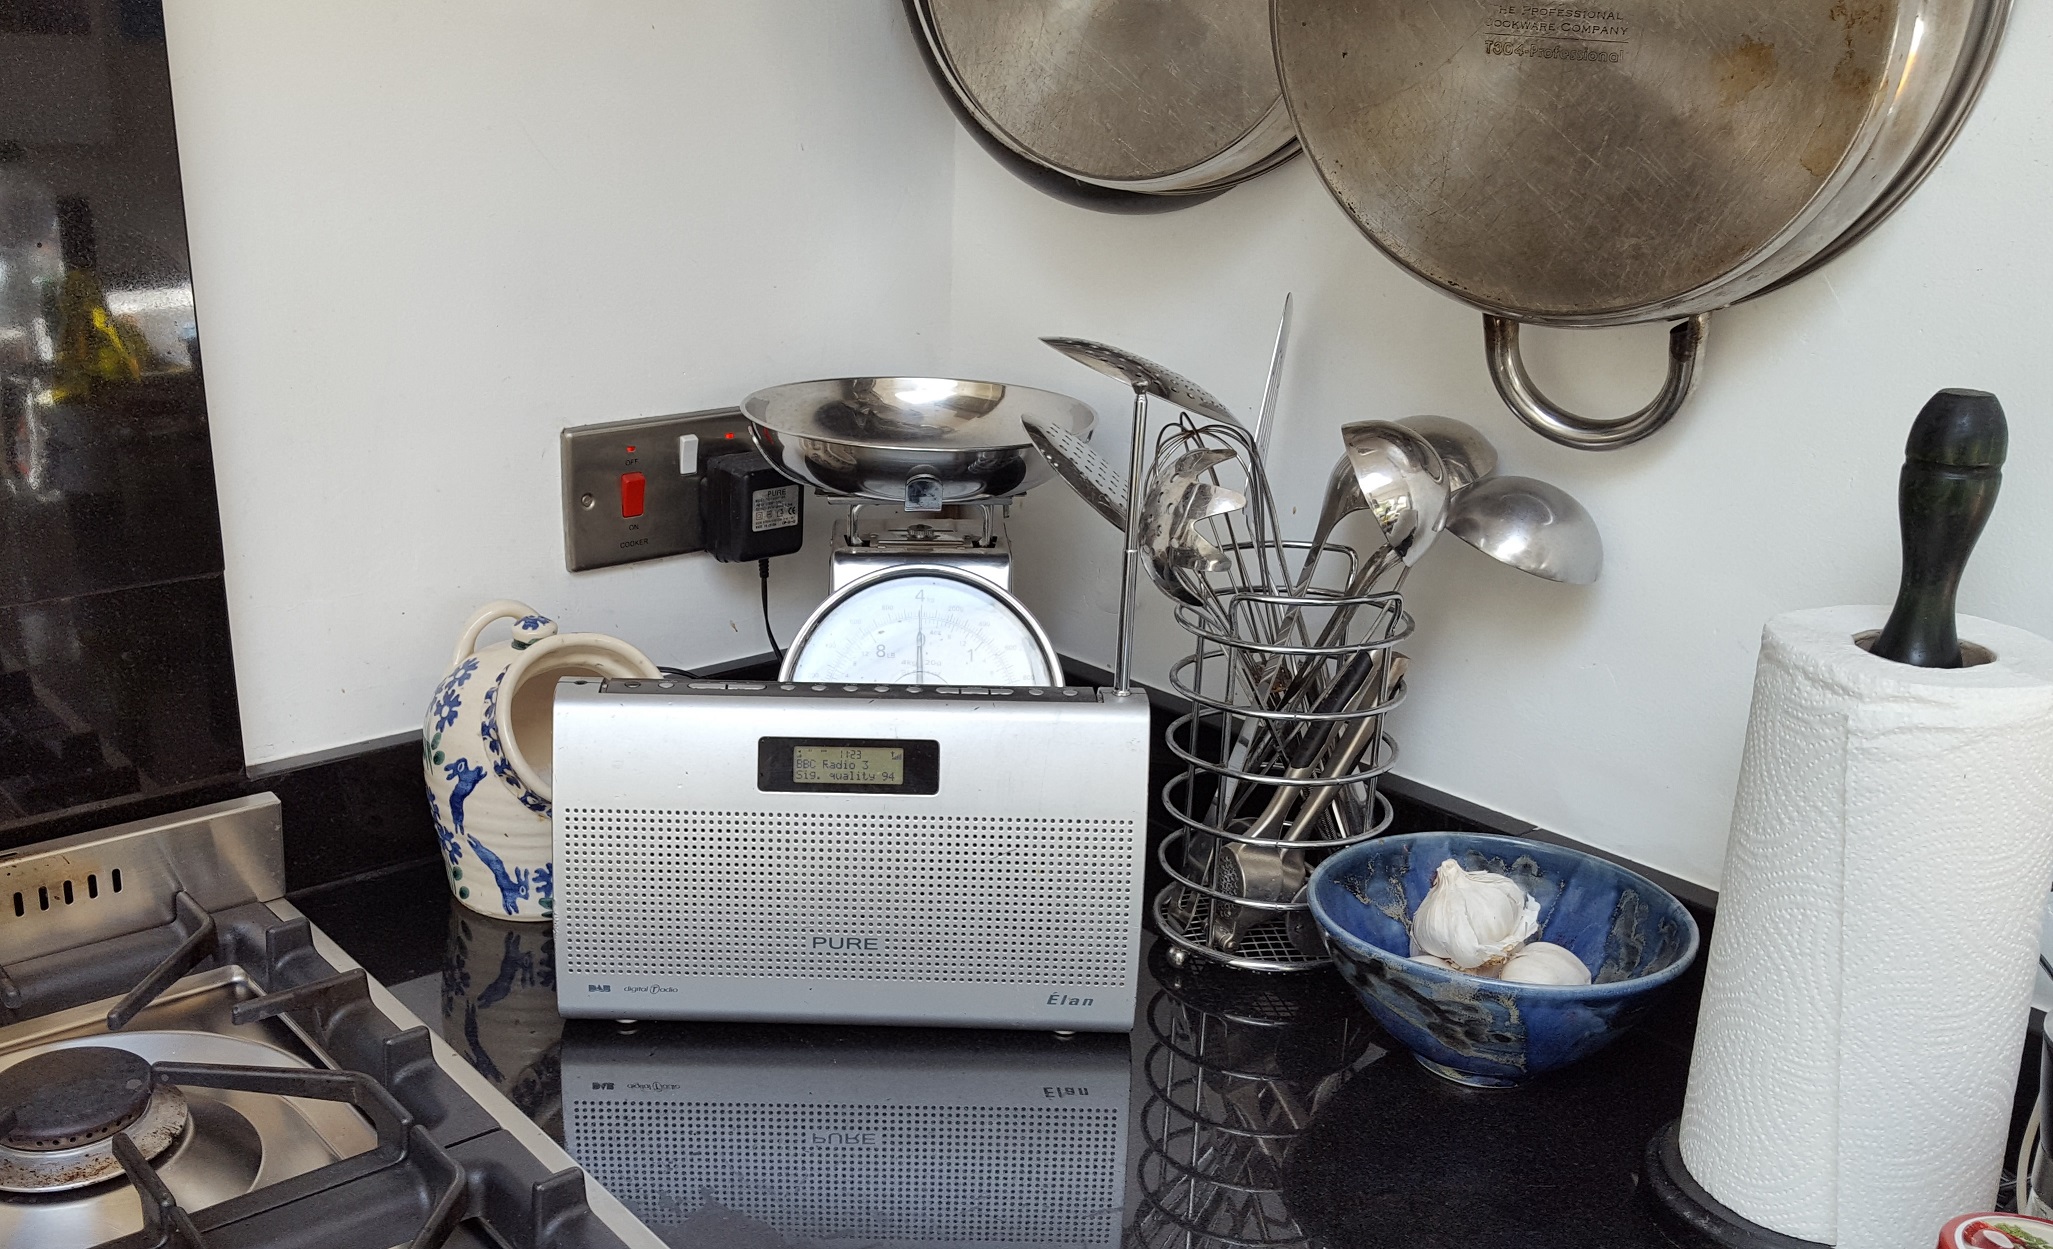 A radio in a kitchen